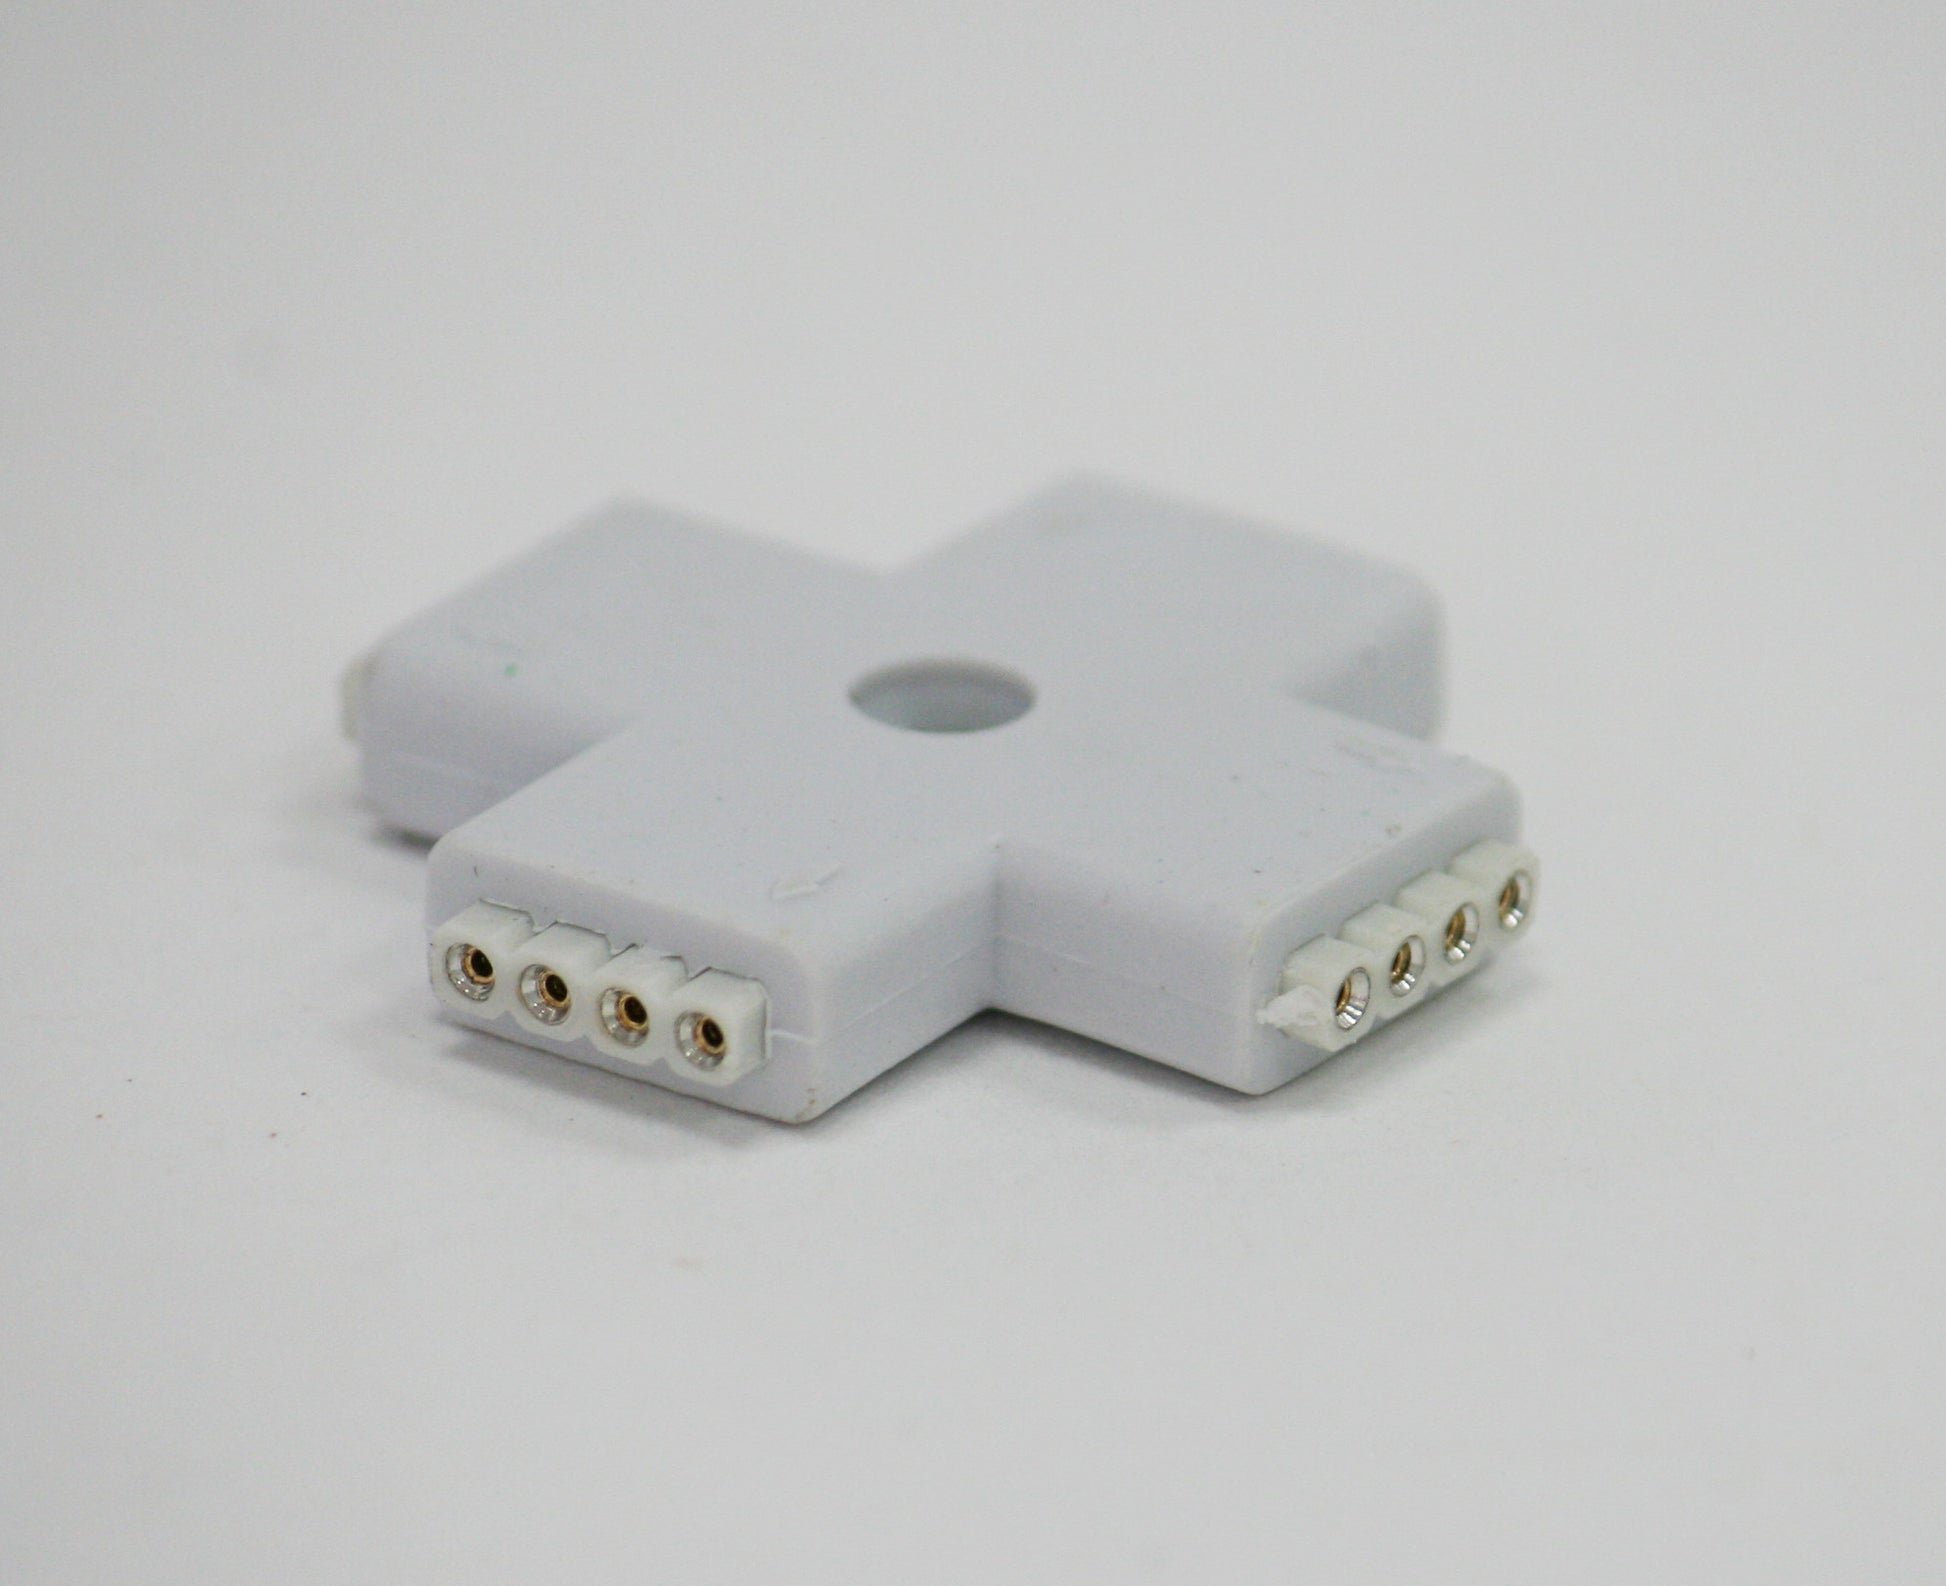 Strip Light Connector (Cross-shaped) Female 4-pin Splitter for RGB LED Strip Lights